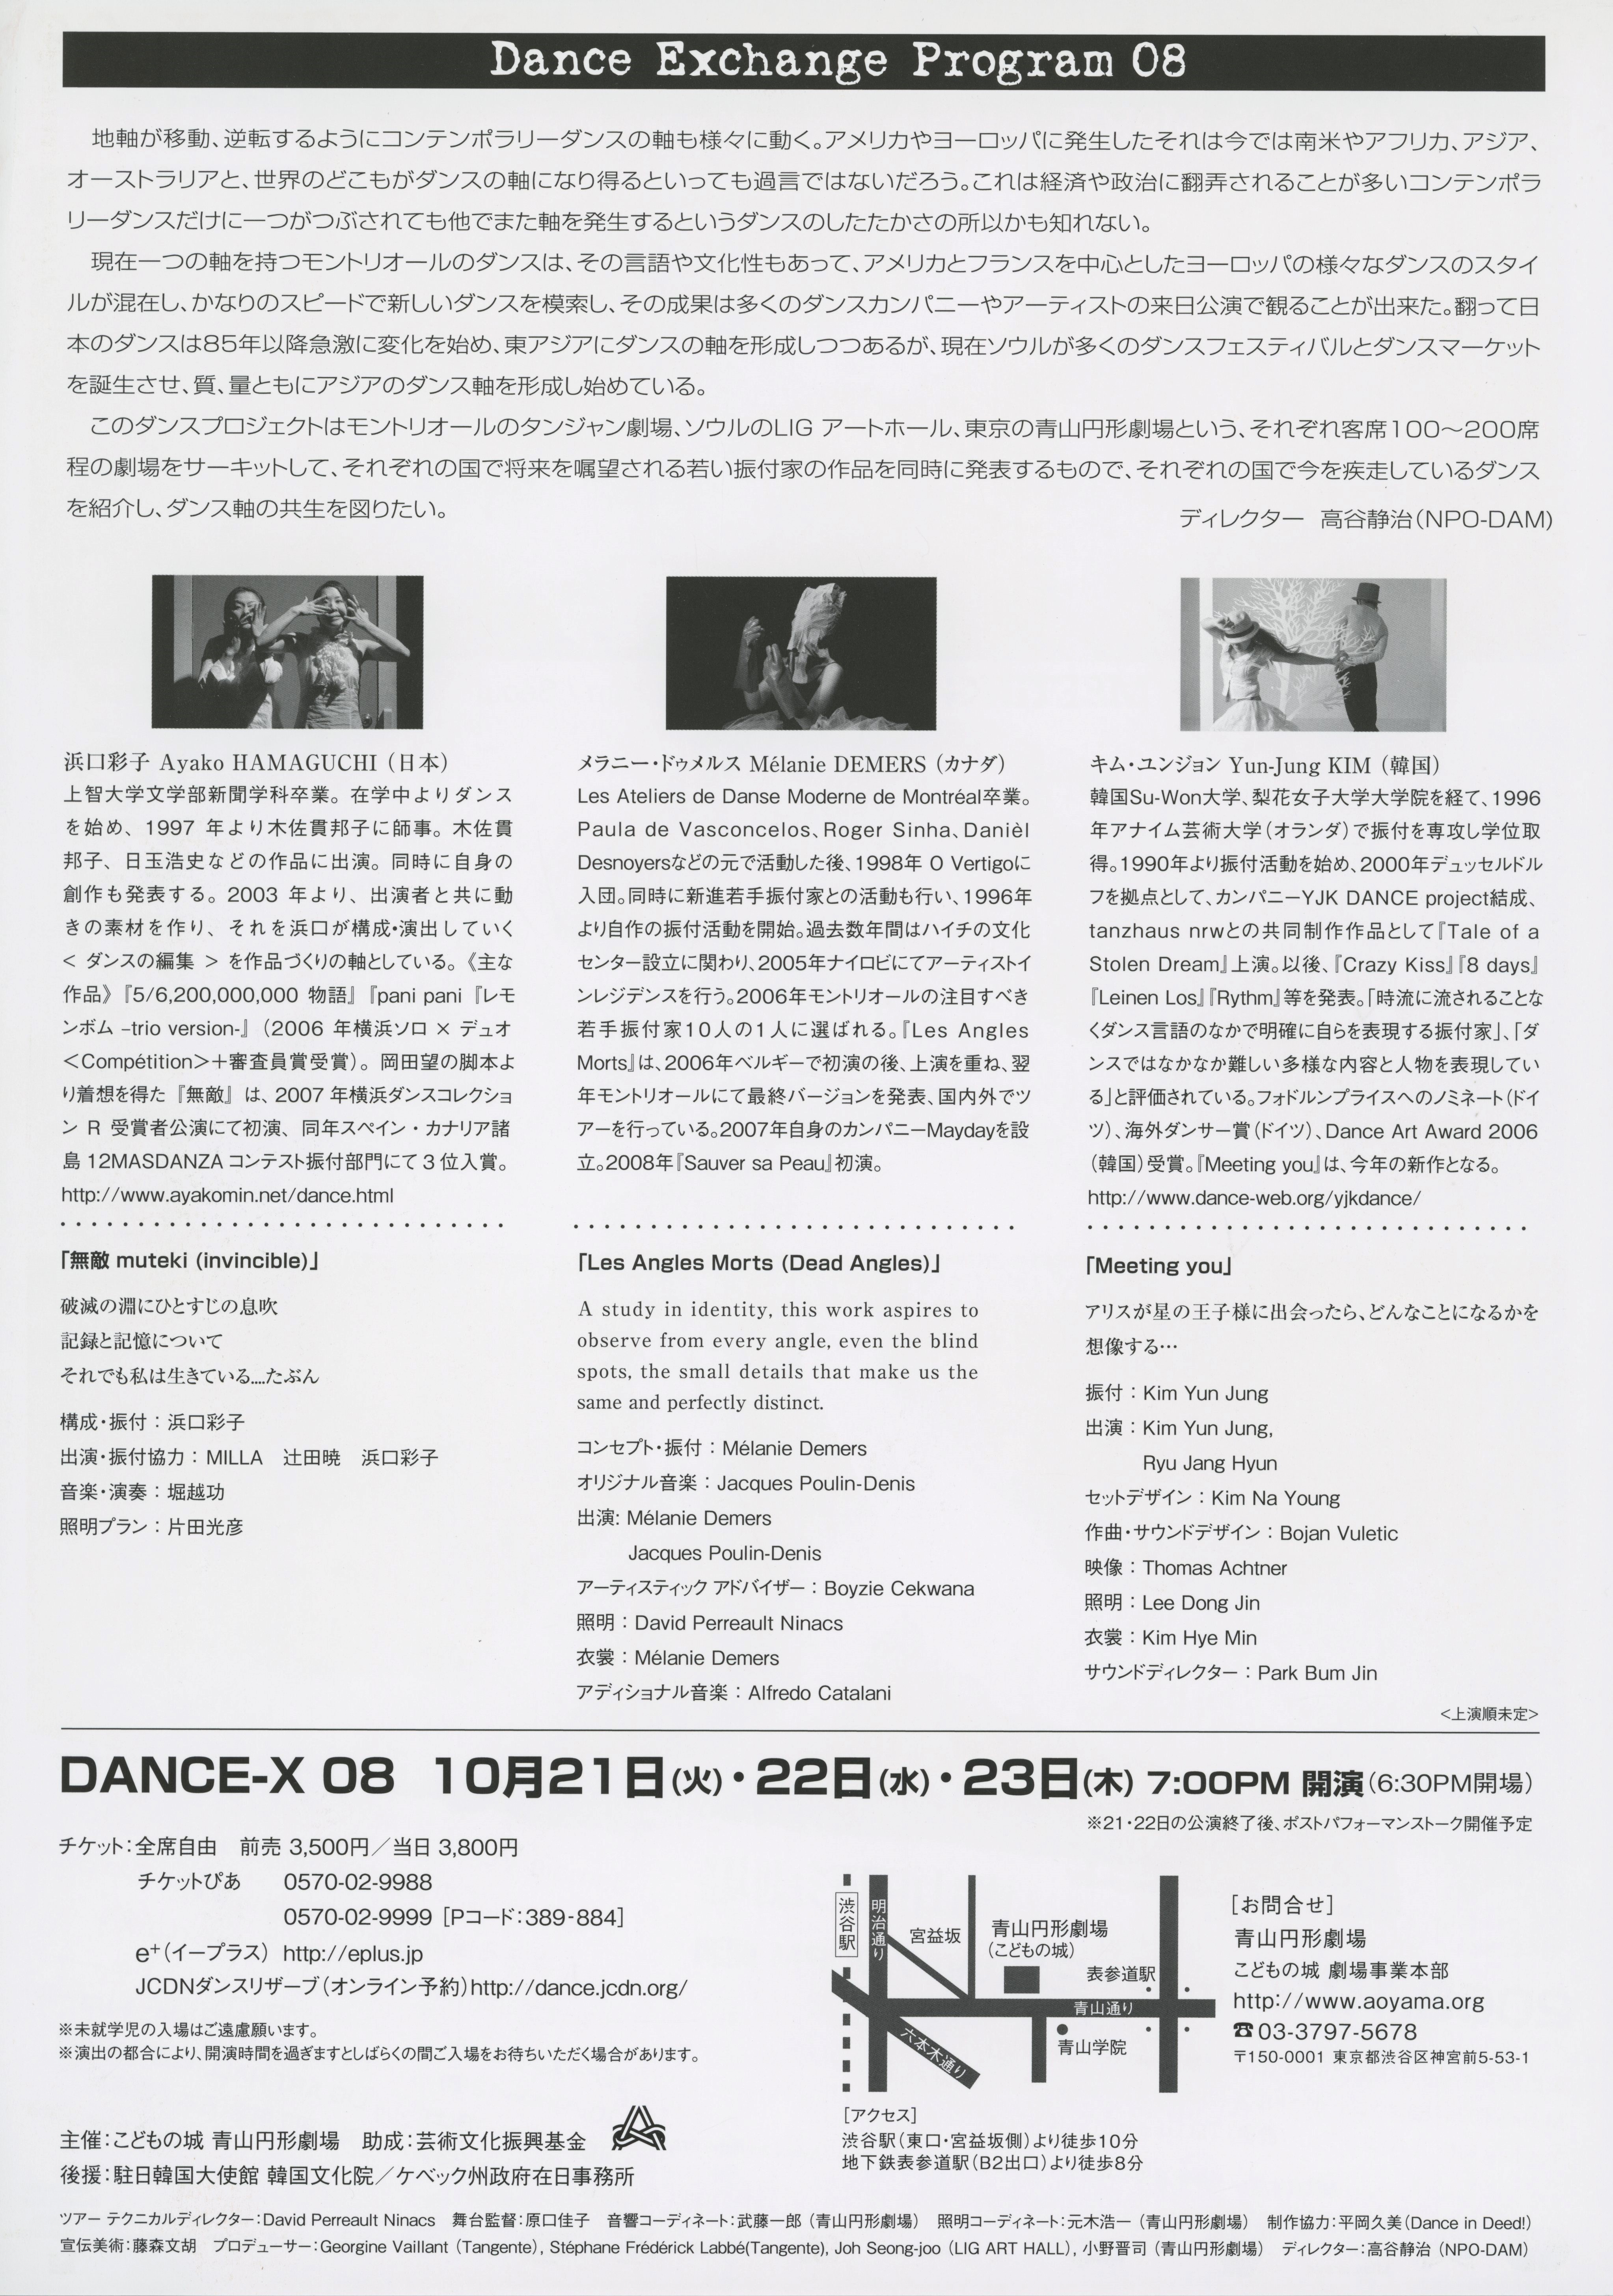 Dance Exchange Program DANCE-X 08